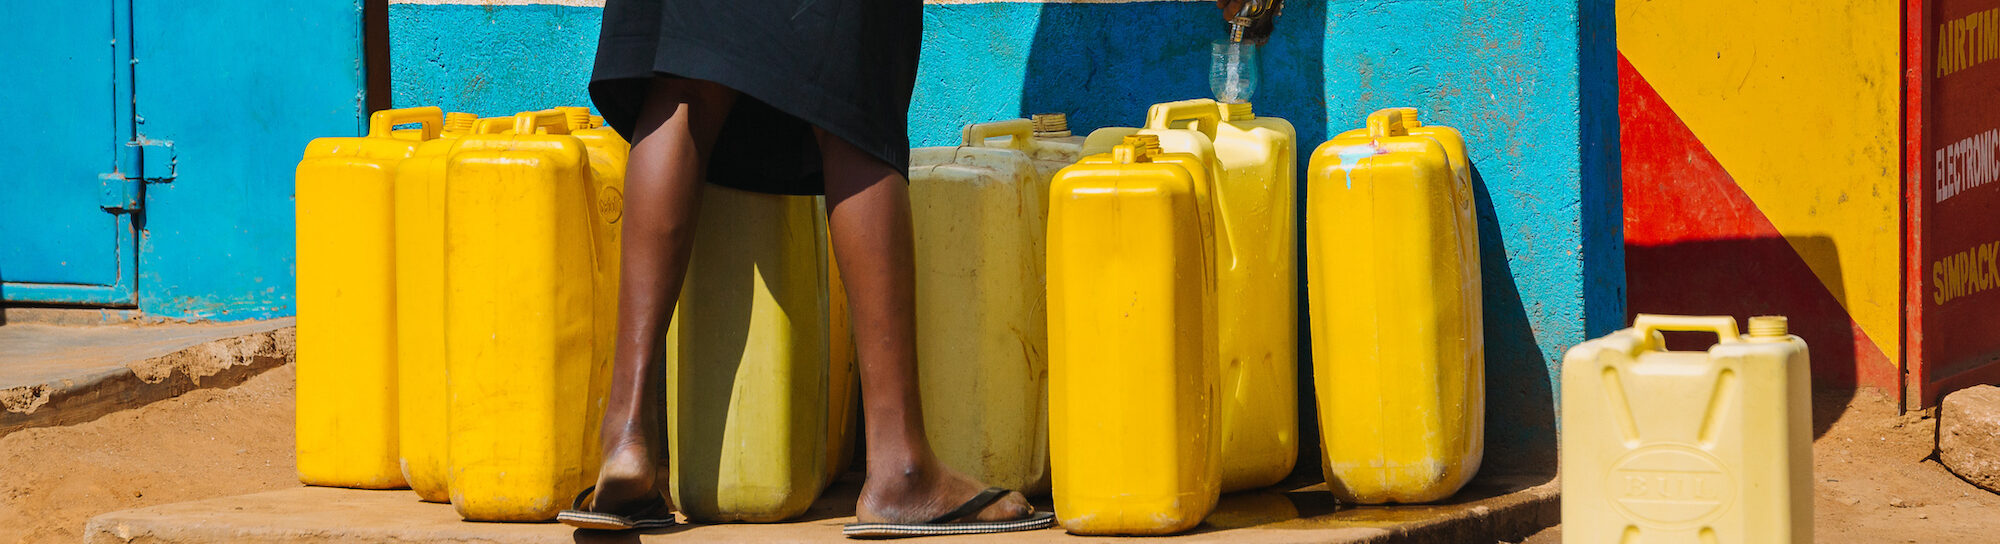 Afrika: 500 Millionen Menschen ohne Wassersicherheit